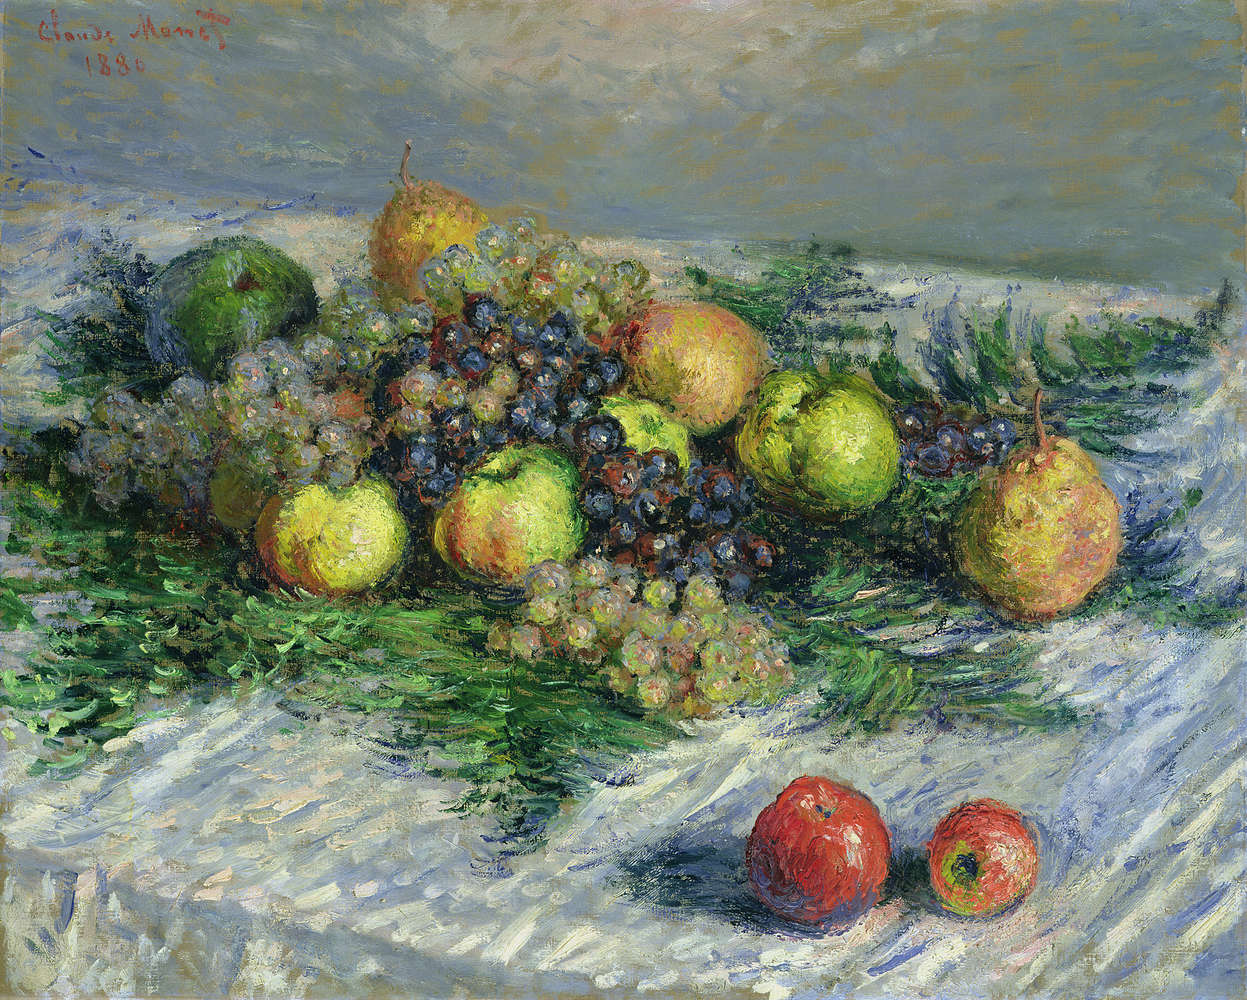             Mural "Naturaleza muerta con peras y uvas" de Claude Monet
        